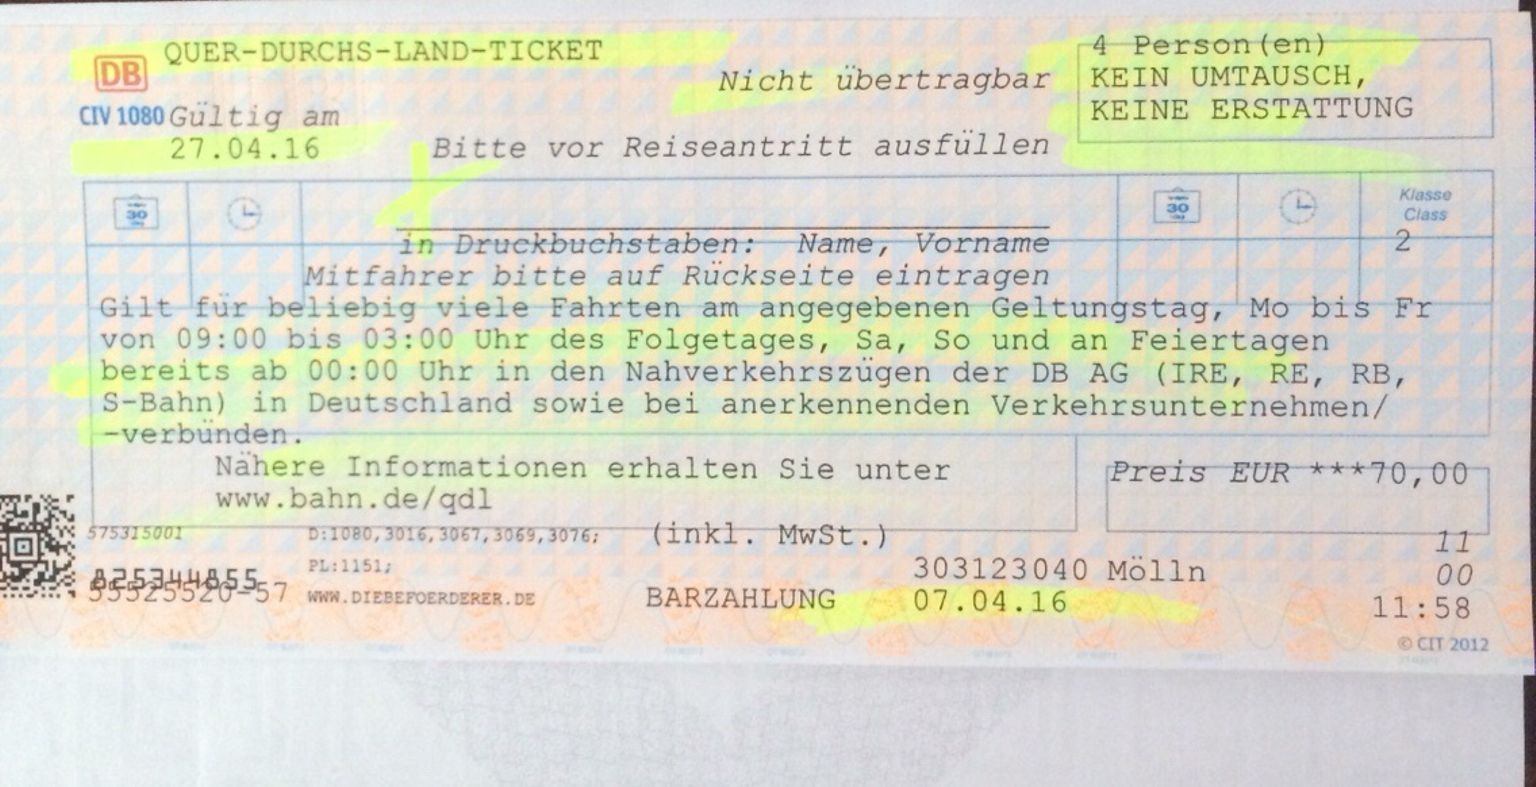 让旅途的舒适度大大提高 而德国铁路公司设计的德国铁路通票(germany